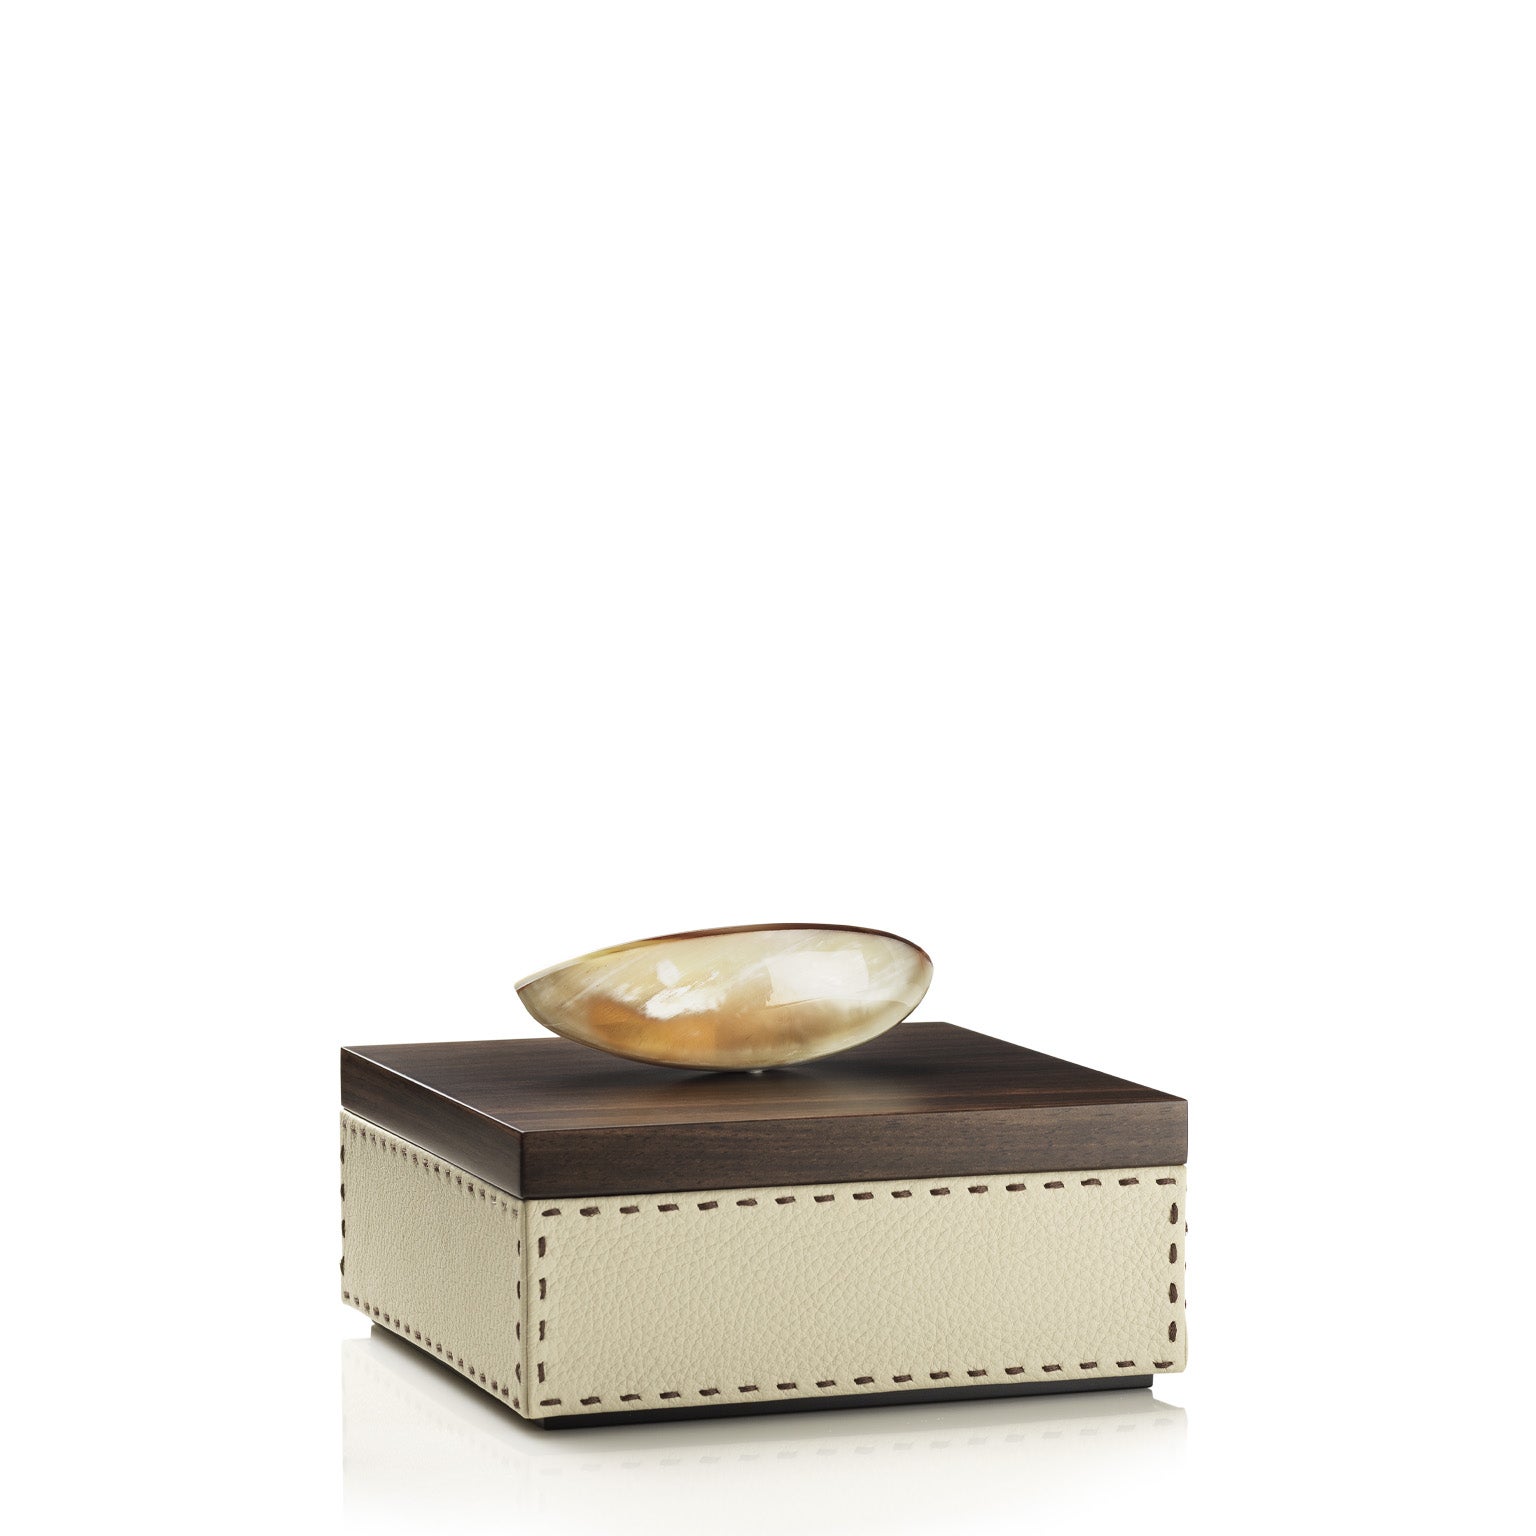 Capricia Square Box in Pebbled Leather with Handle in Corno Italiano, Mod. 4471 For Sale